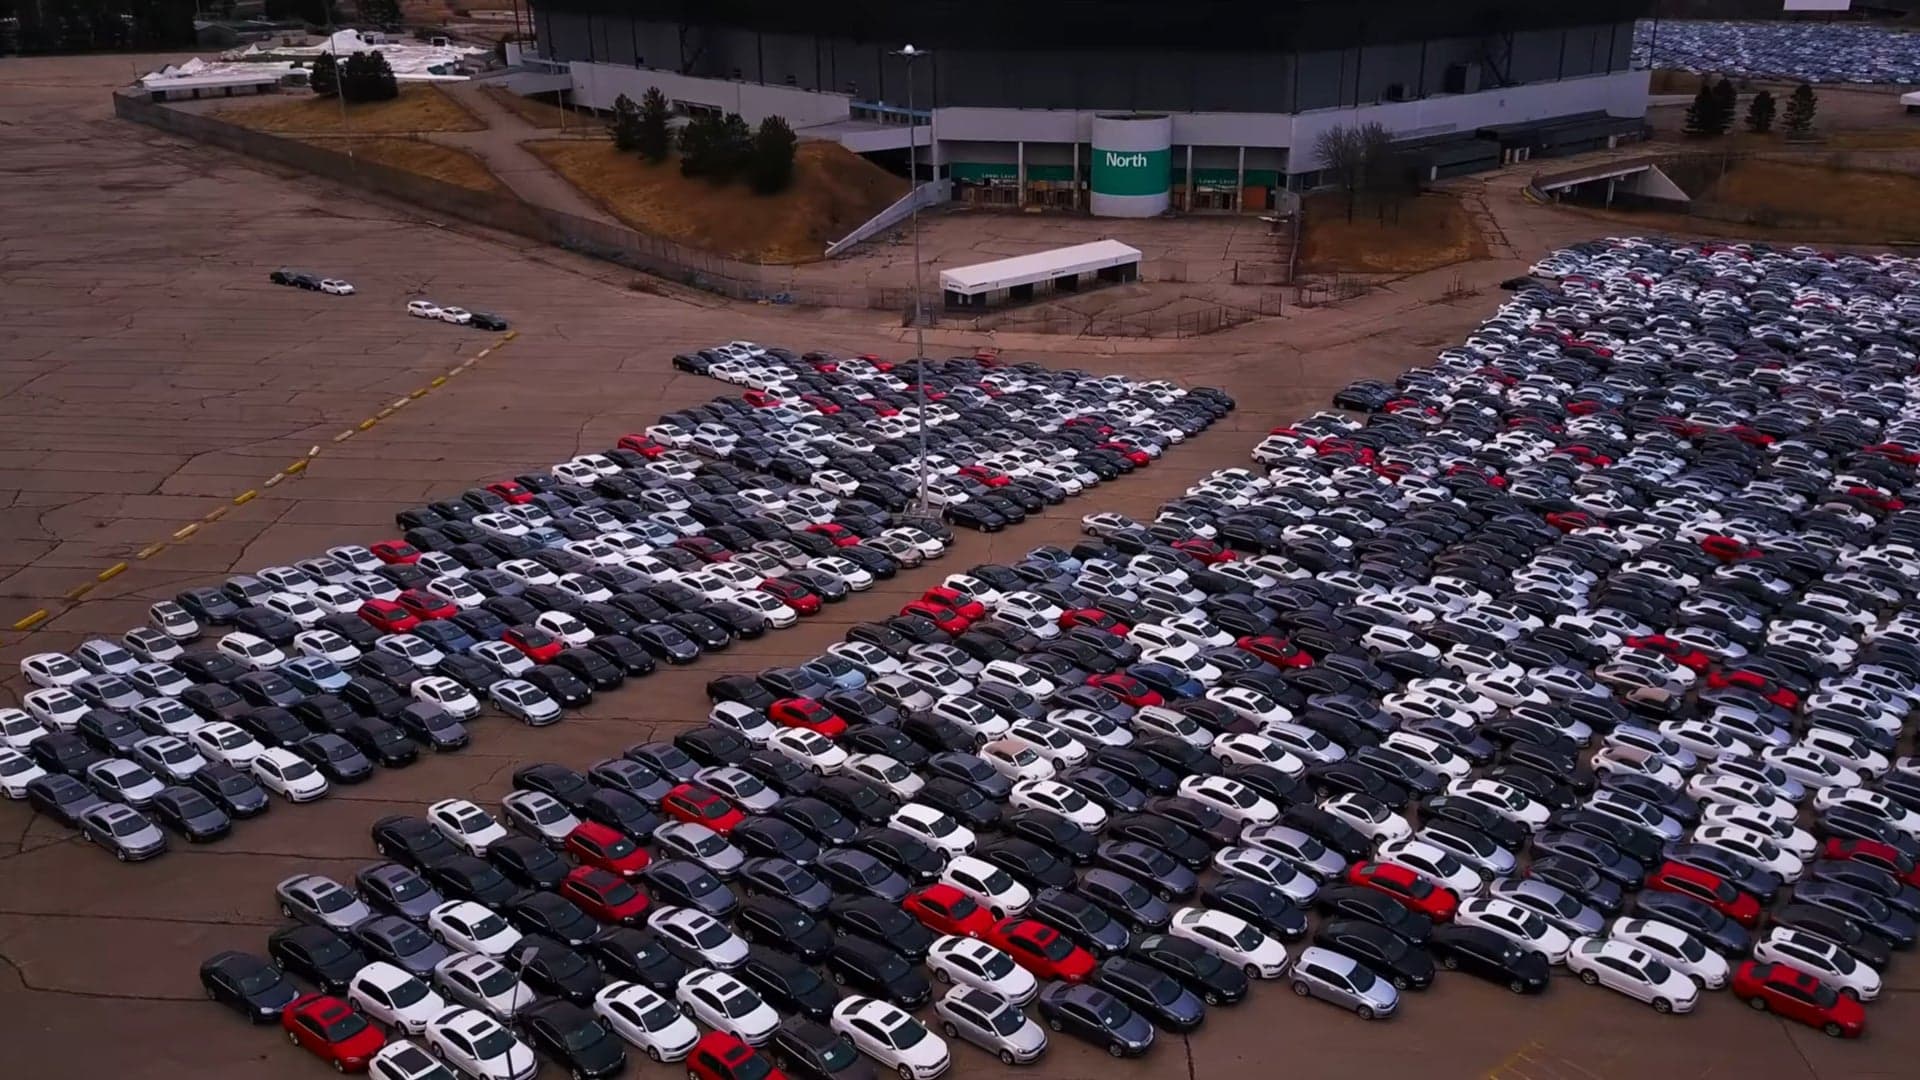 This Volkswagen Dieselgate Staging Area Looks Eerie in 4k